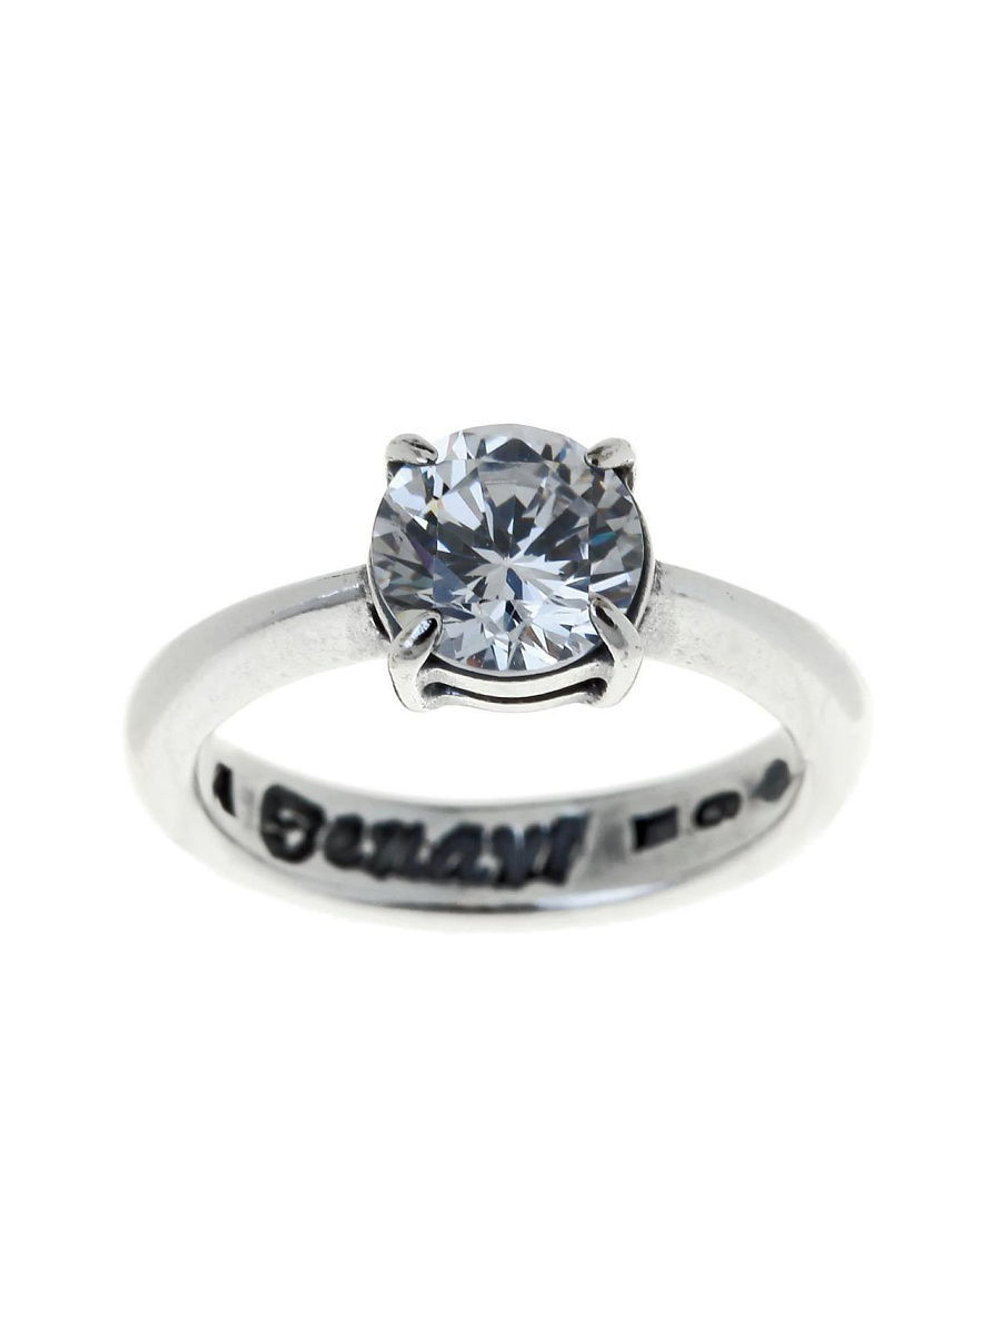 "Сарти" кольцо в серебряном покрытии из коллекции "Циркония" от Jenavi